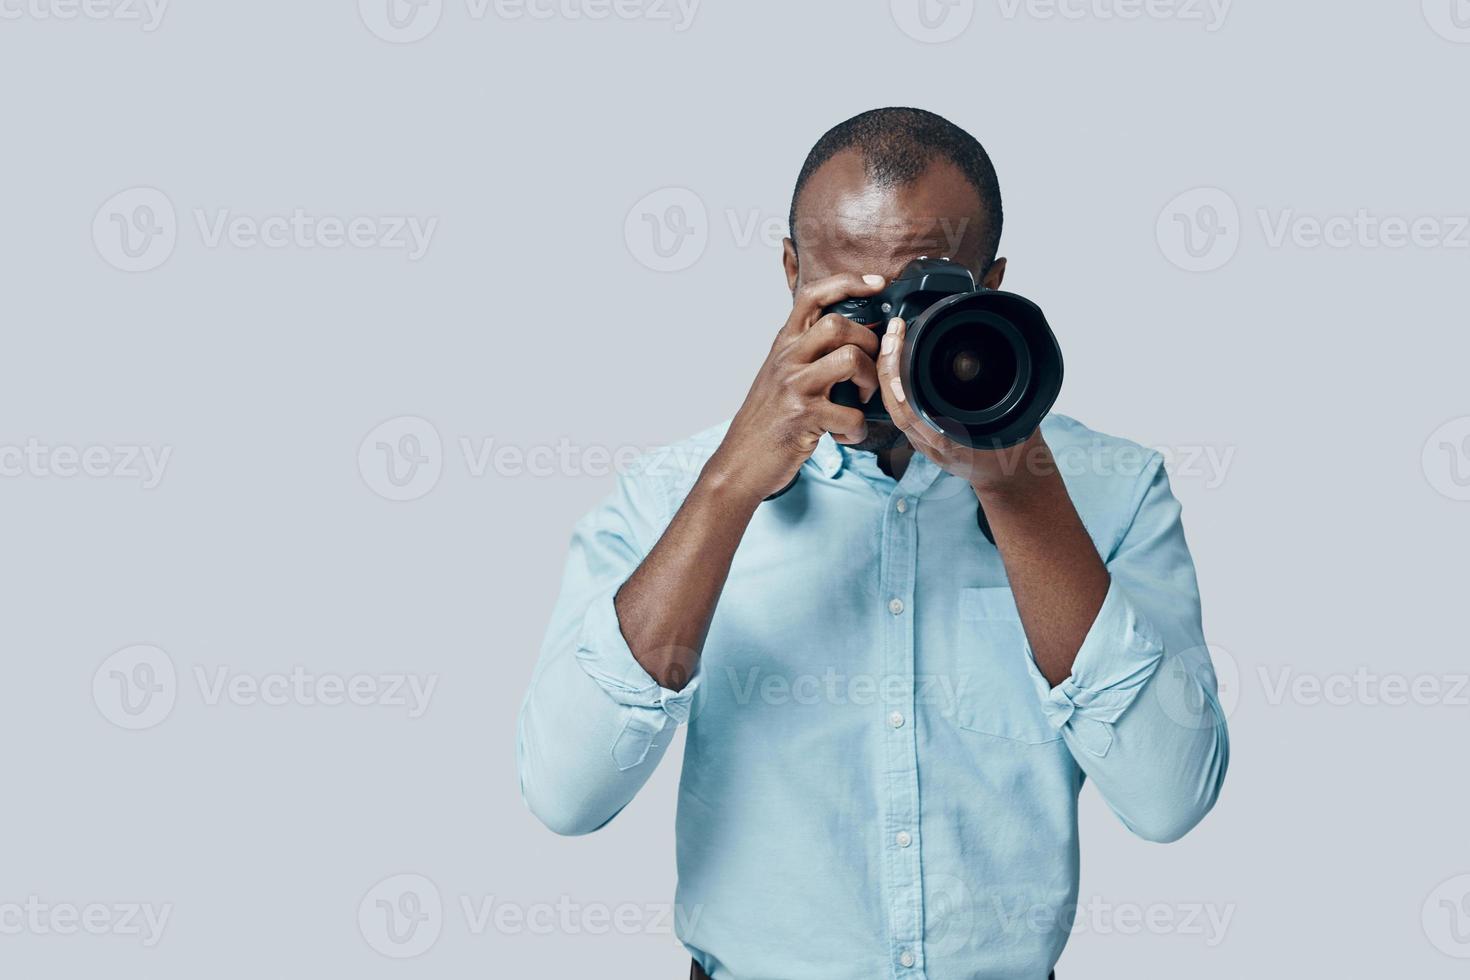 encantador joven africano tomando una foto con una cámara digital mientras se enfrenta a un fondo gris